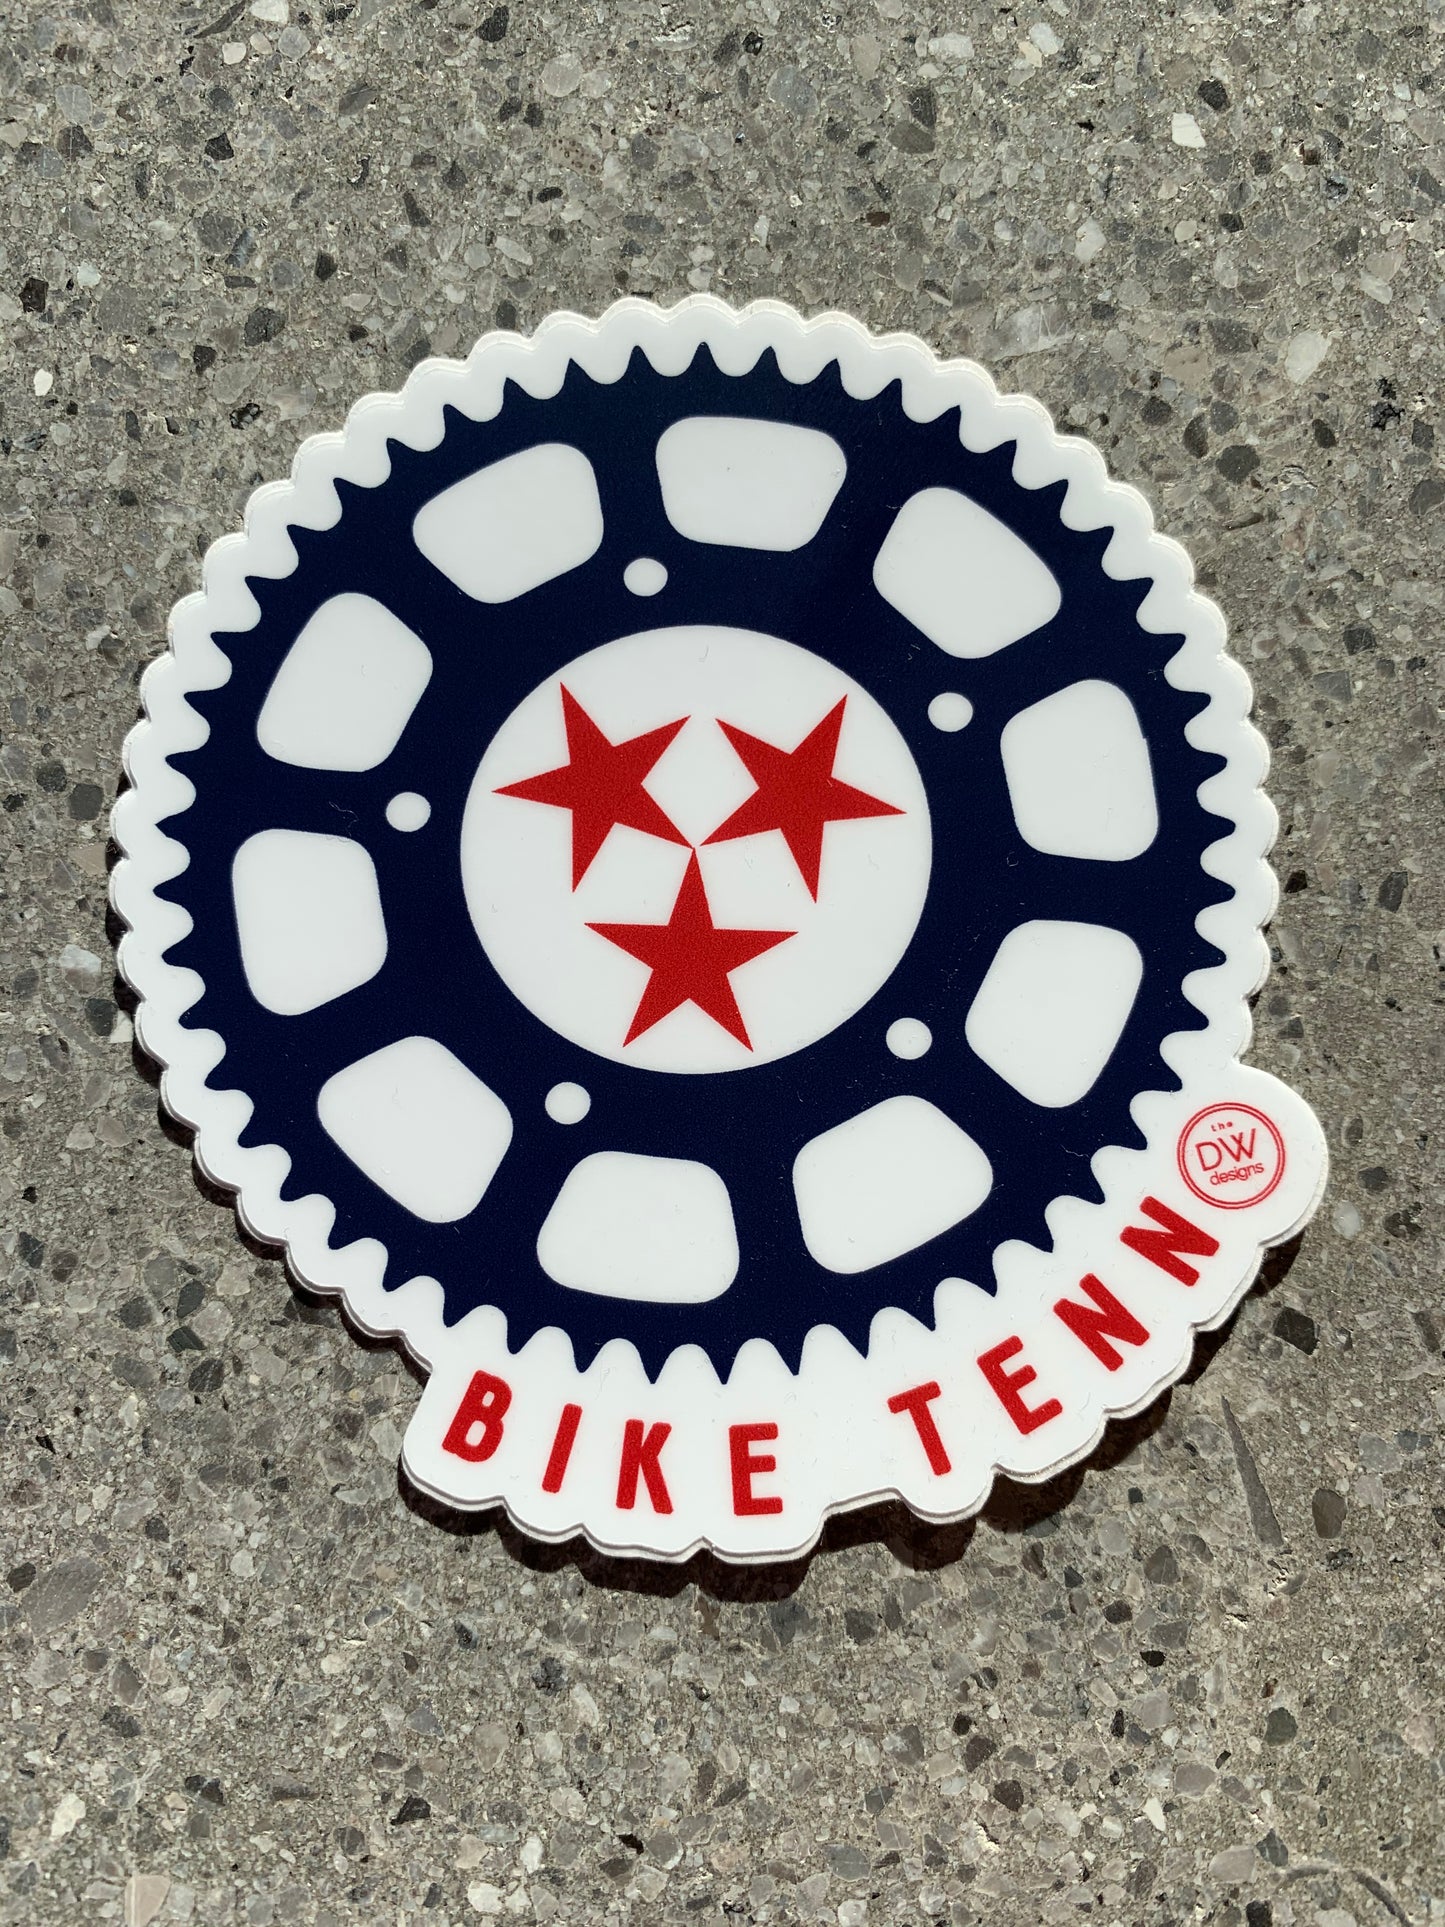 The Bike Tenn Sticker